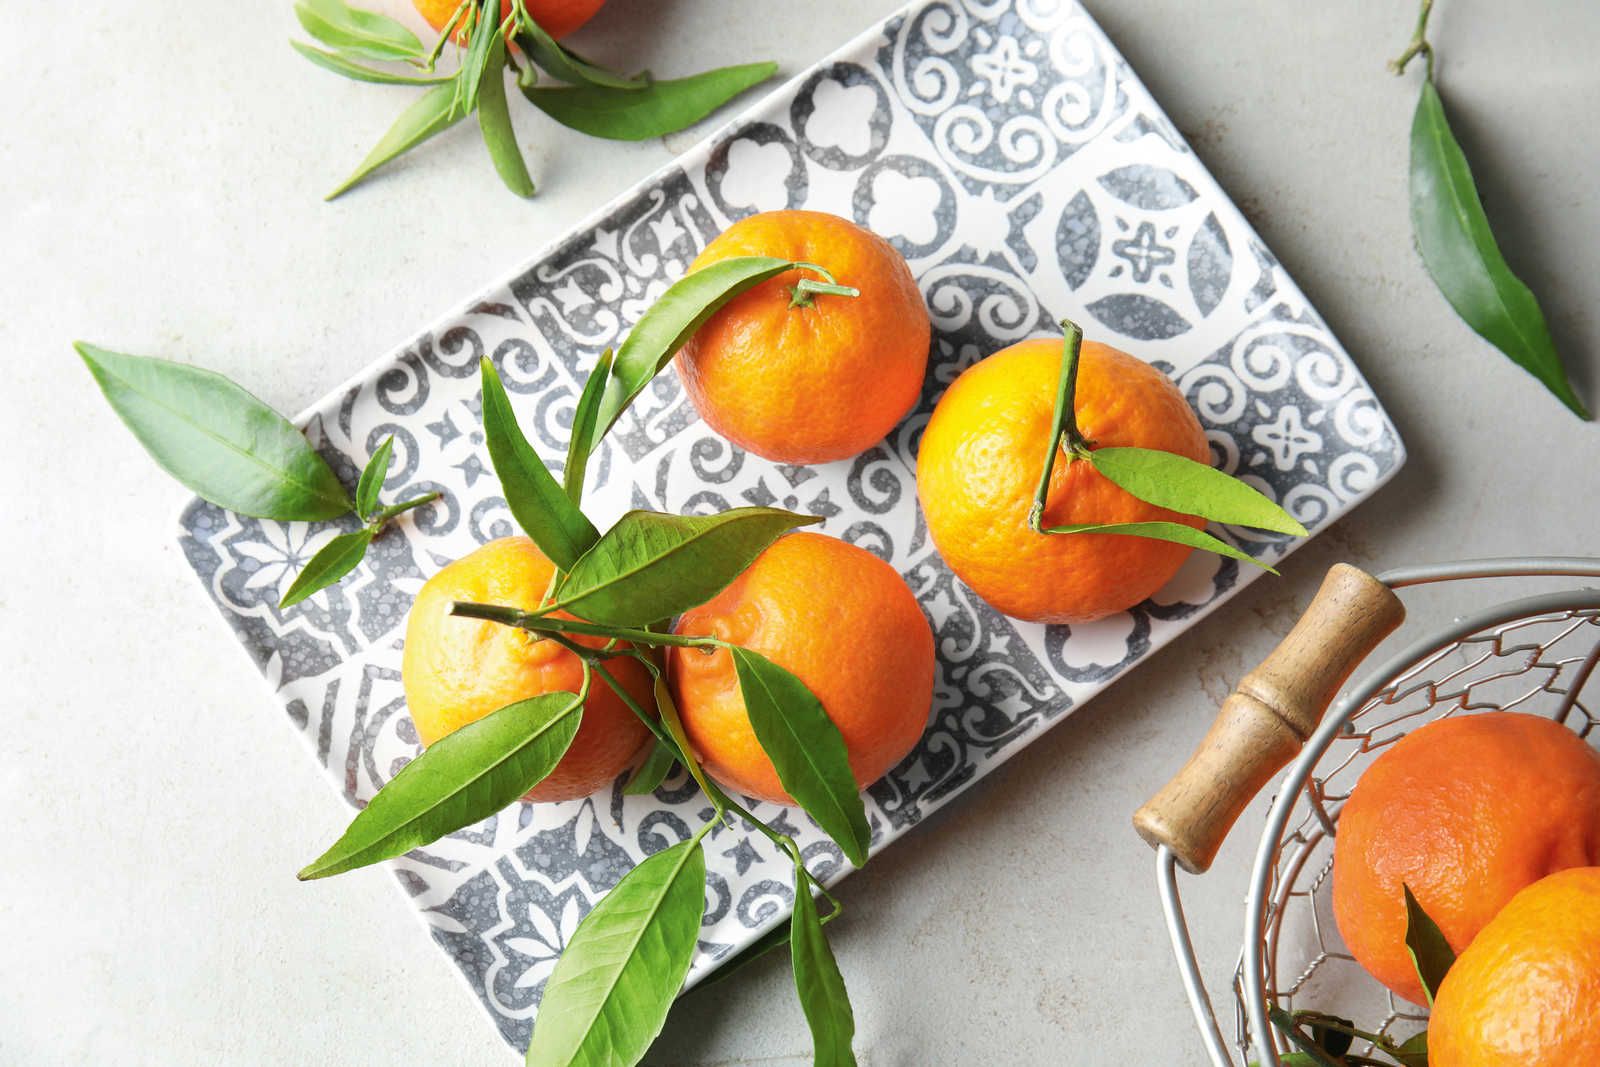             Barritas aromáticas de naranja con fragancia que levanta el ánimo - 100ml
        